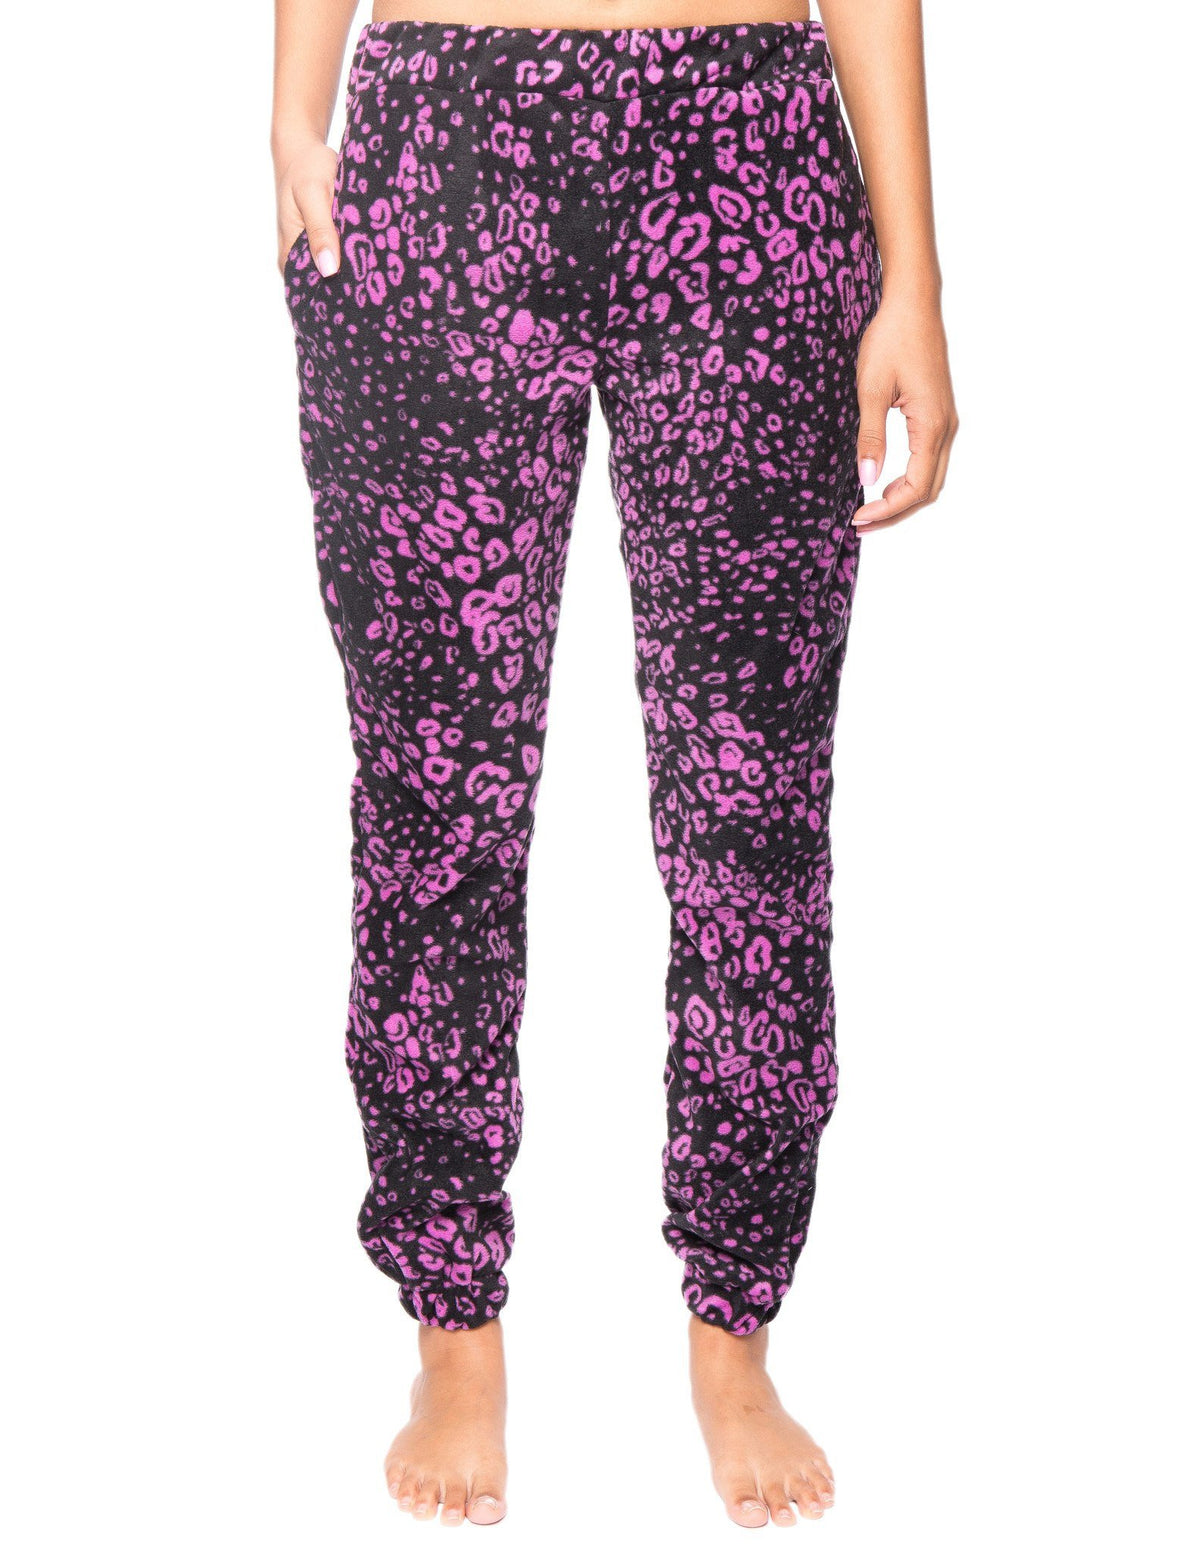 Women's Premium Microfleece Jogger Lounge Pant - Leopard Black/Purple